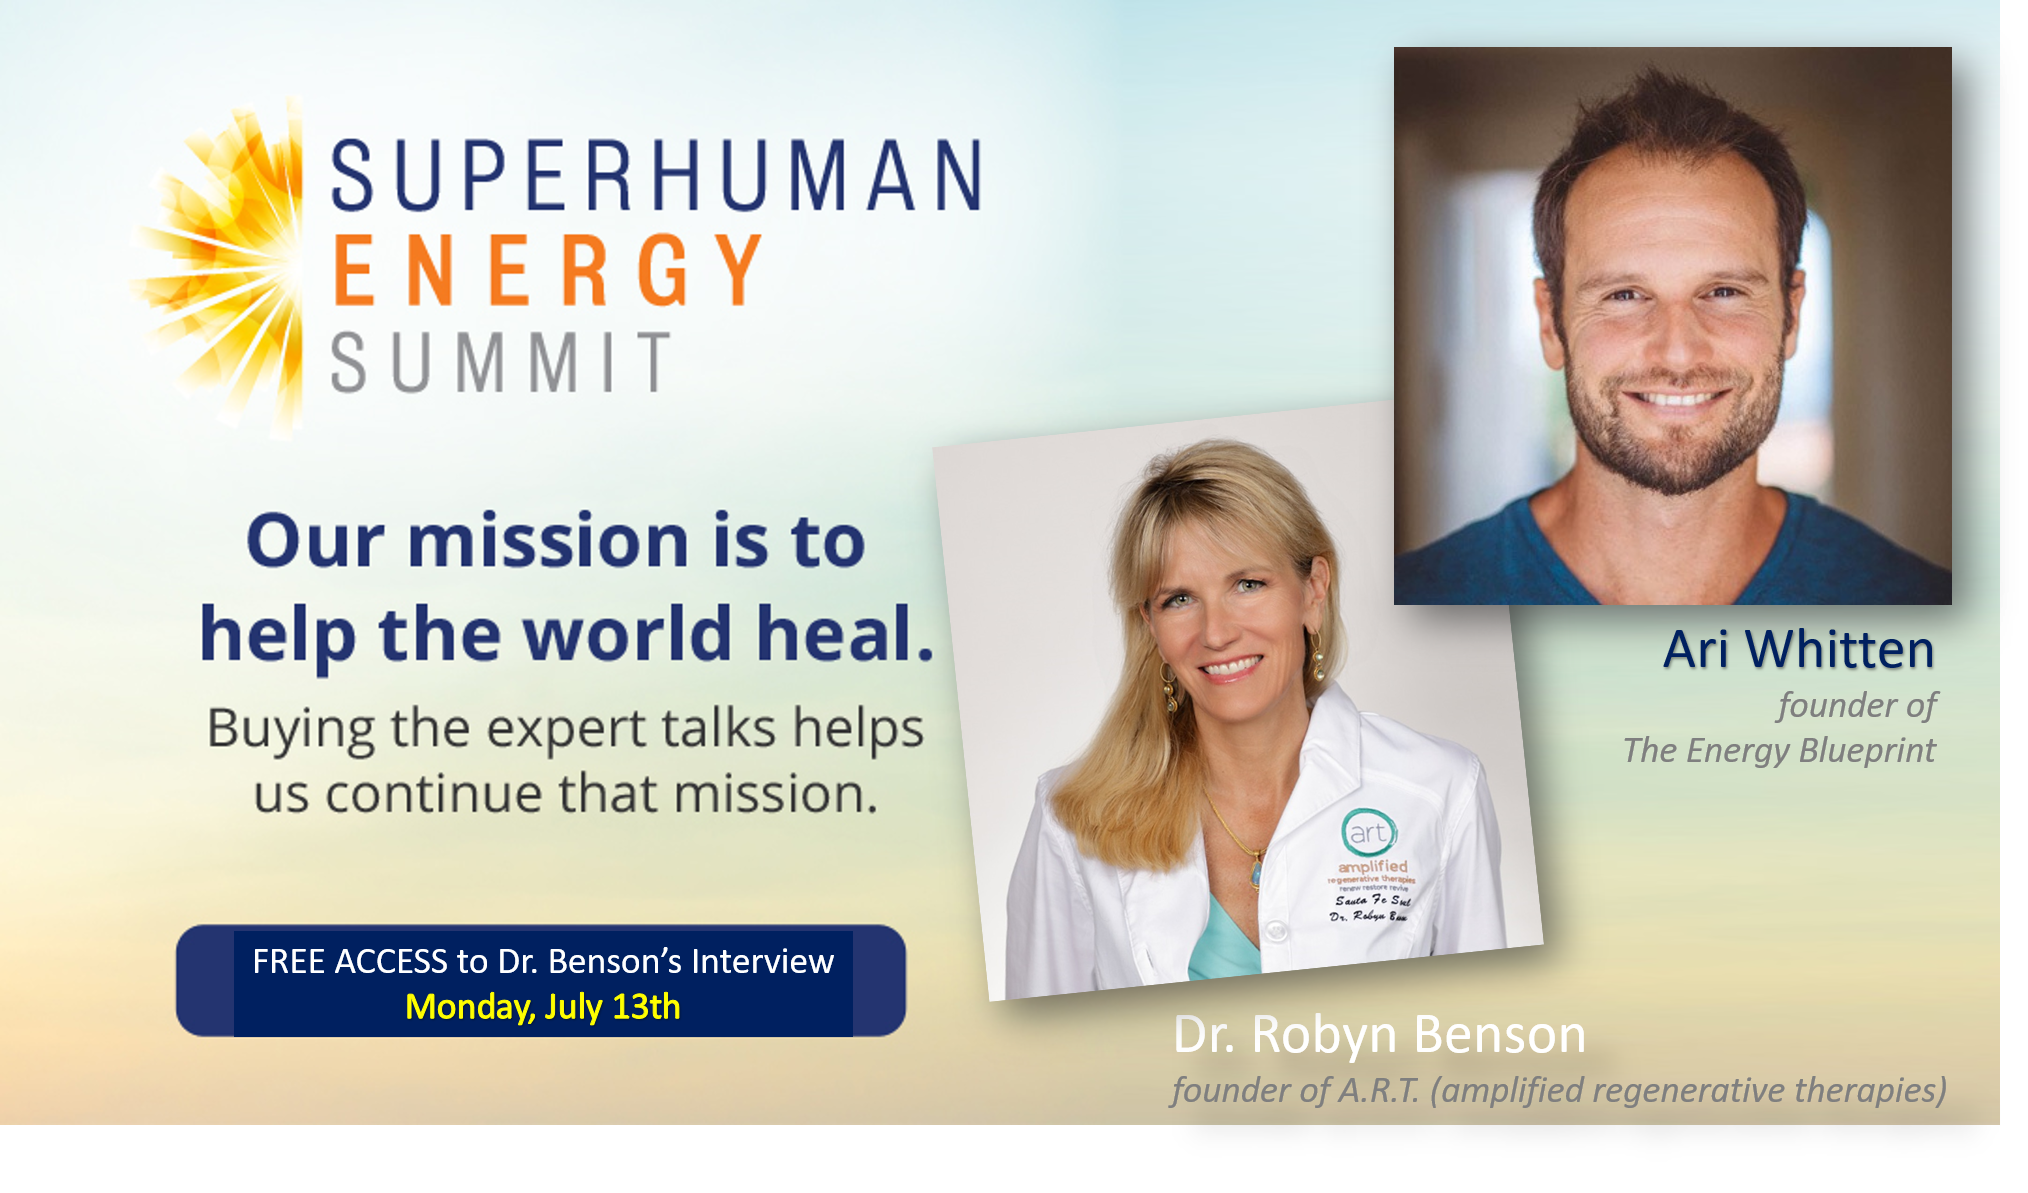 Superhuman Energy Summit